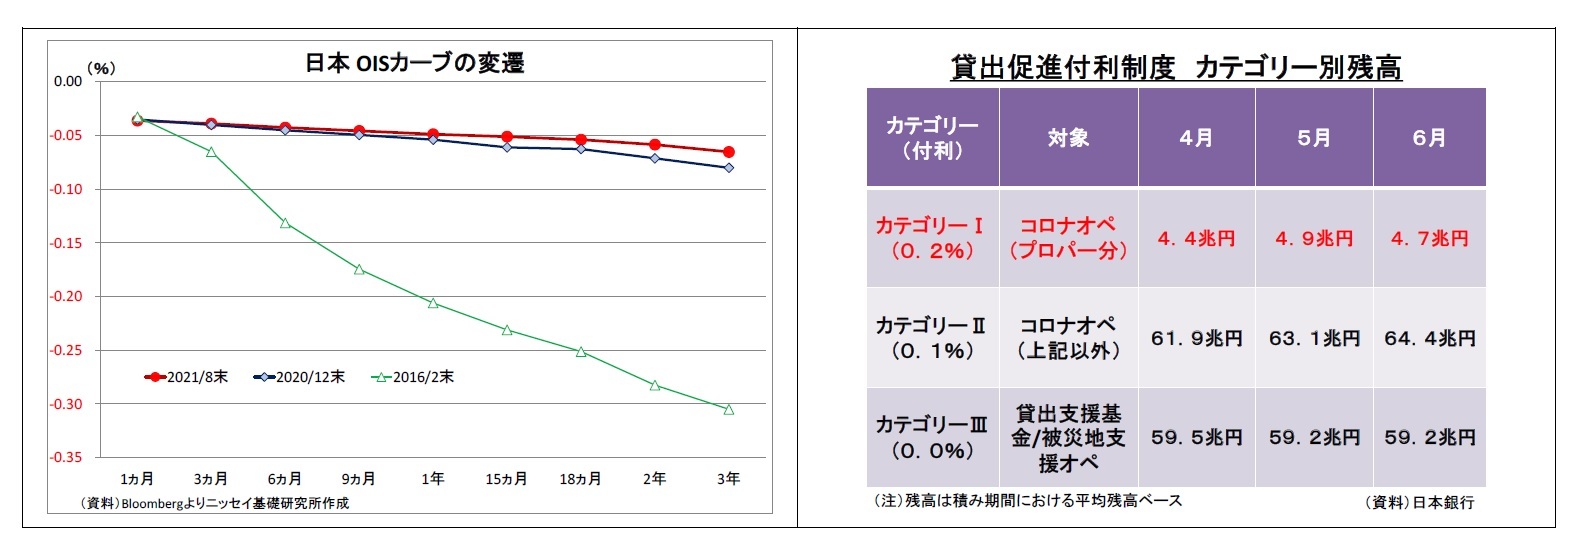 日本OISカーブの変遷/貸出促進付利制度カテゴリー別残高